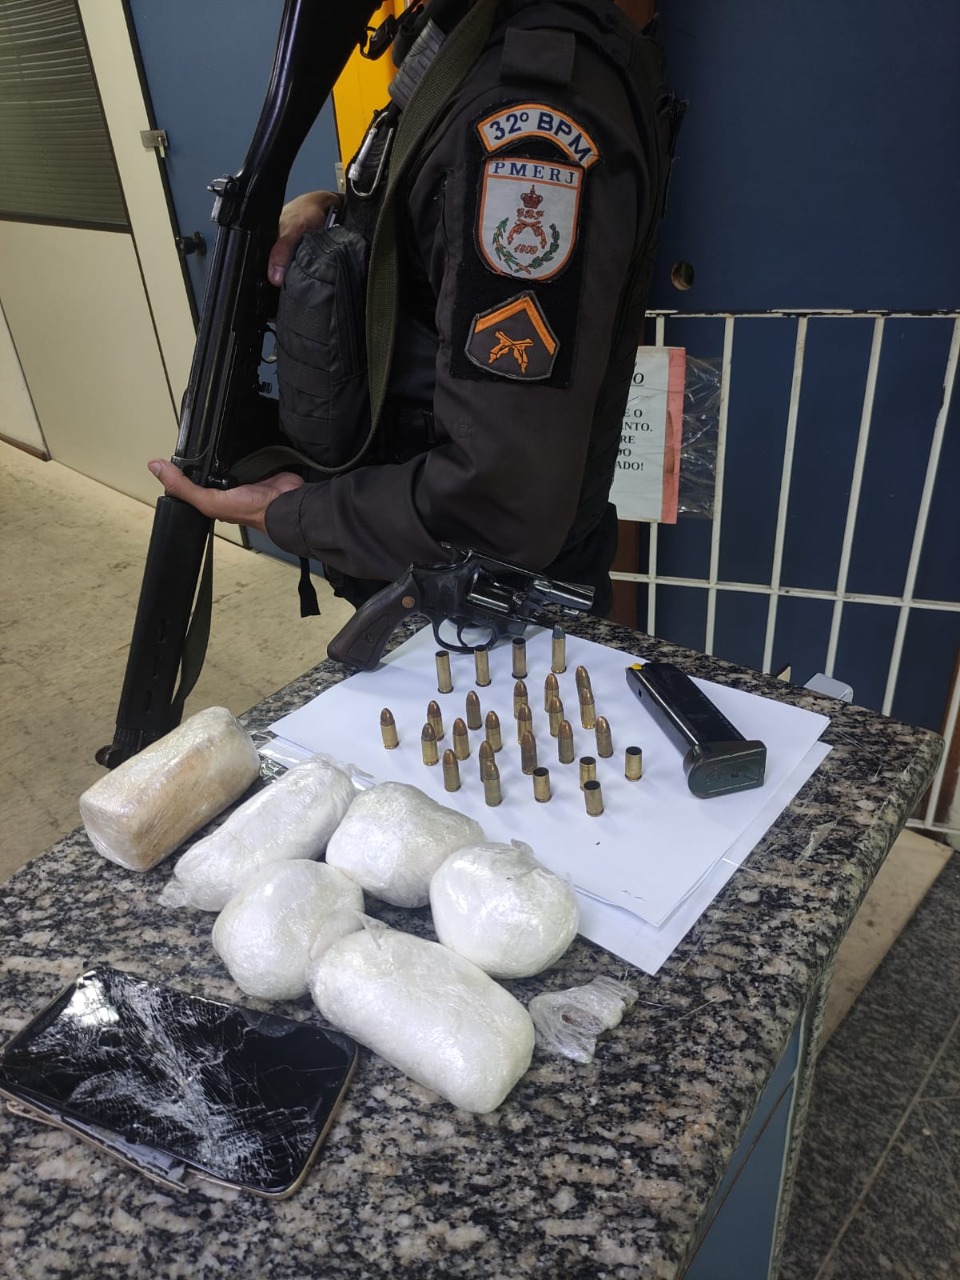 Os policiais encontraram um revólver, munições, carregador, drogas e um celular 